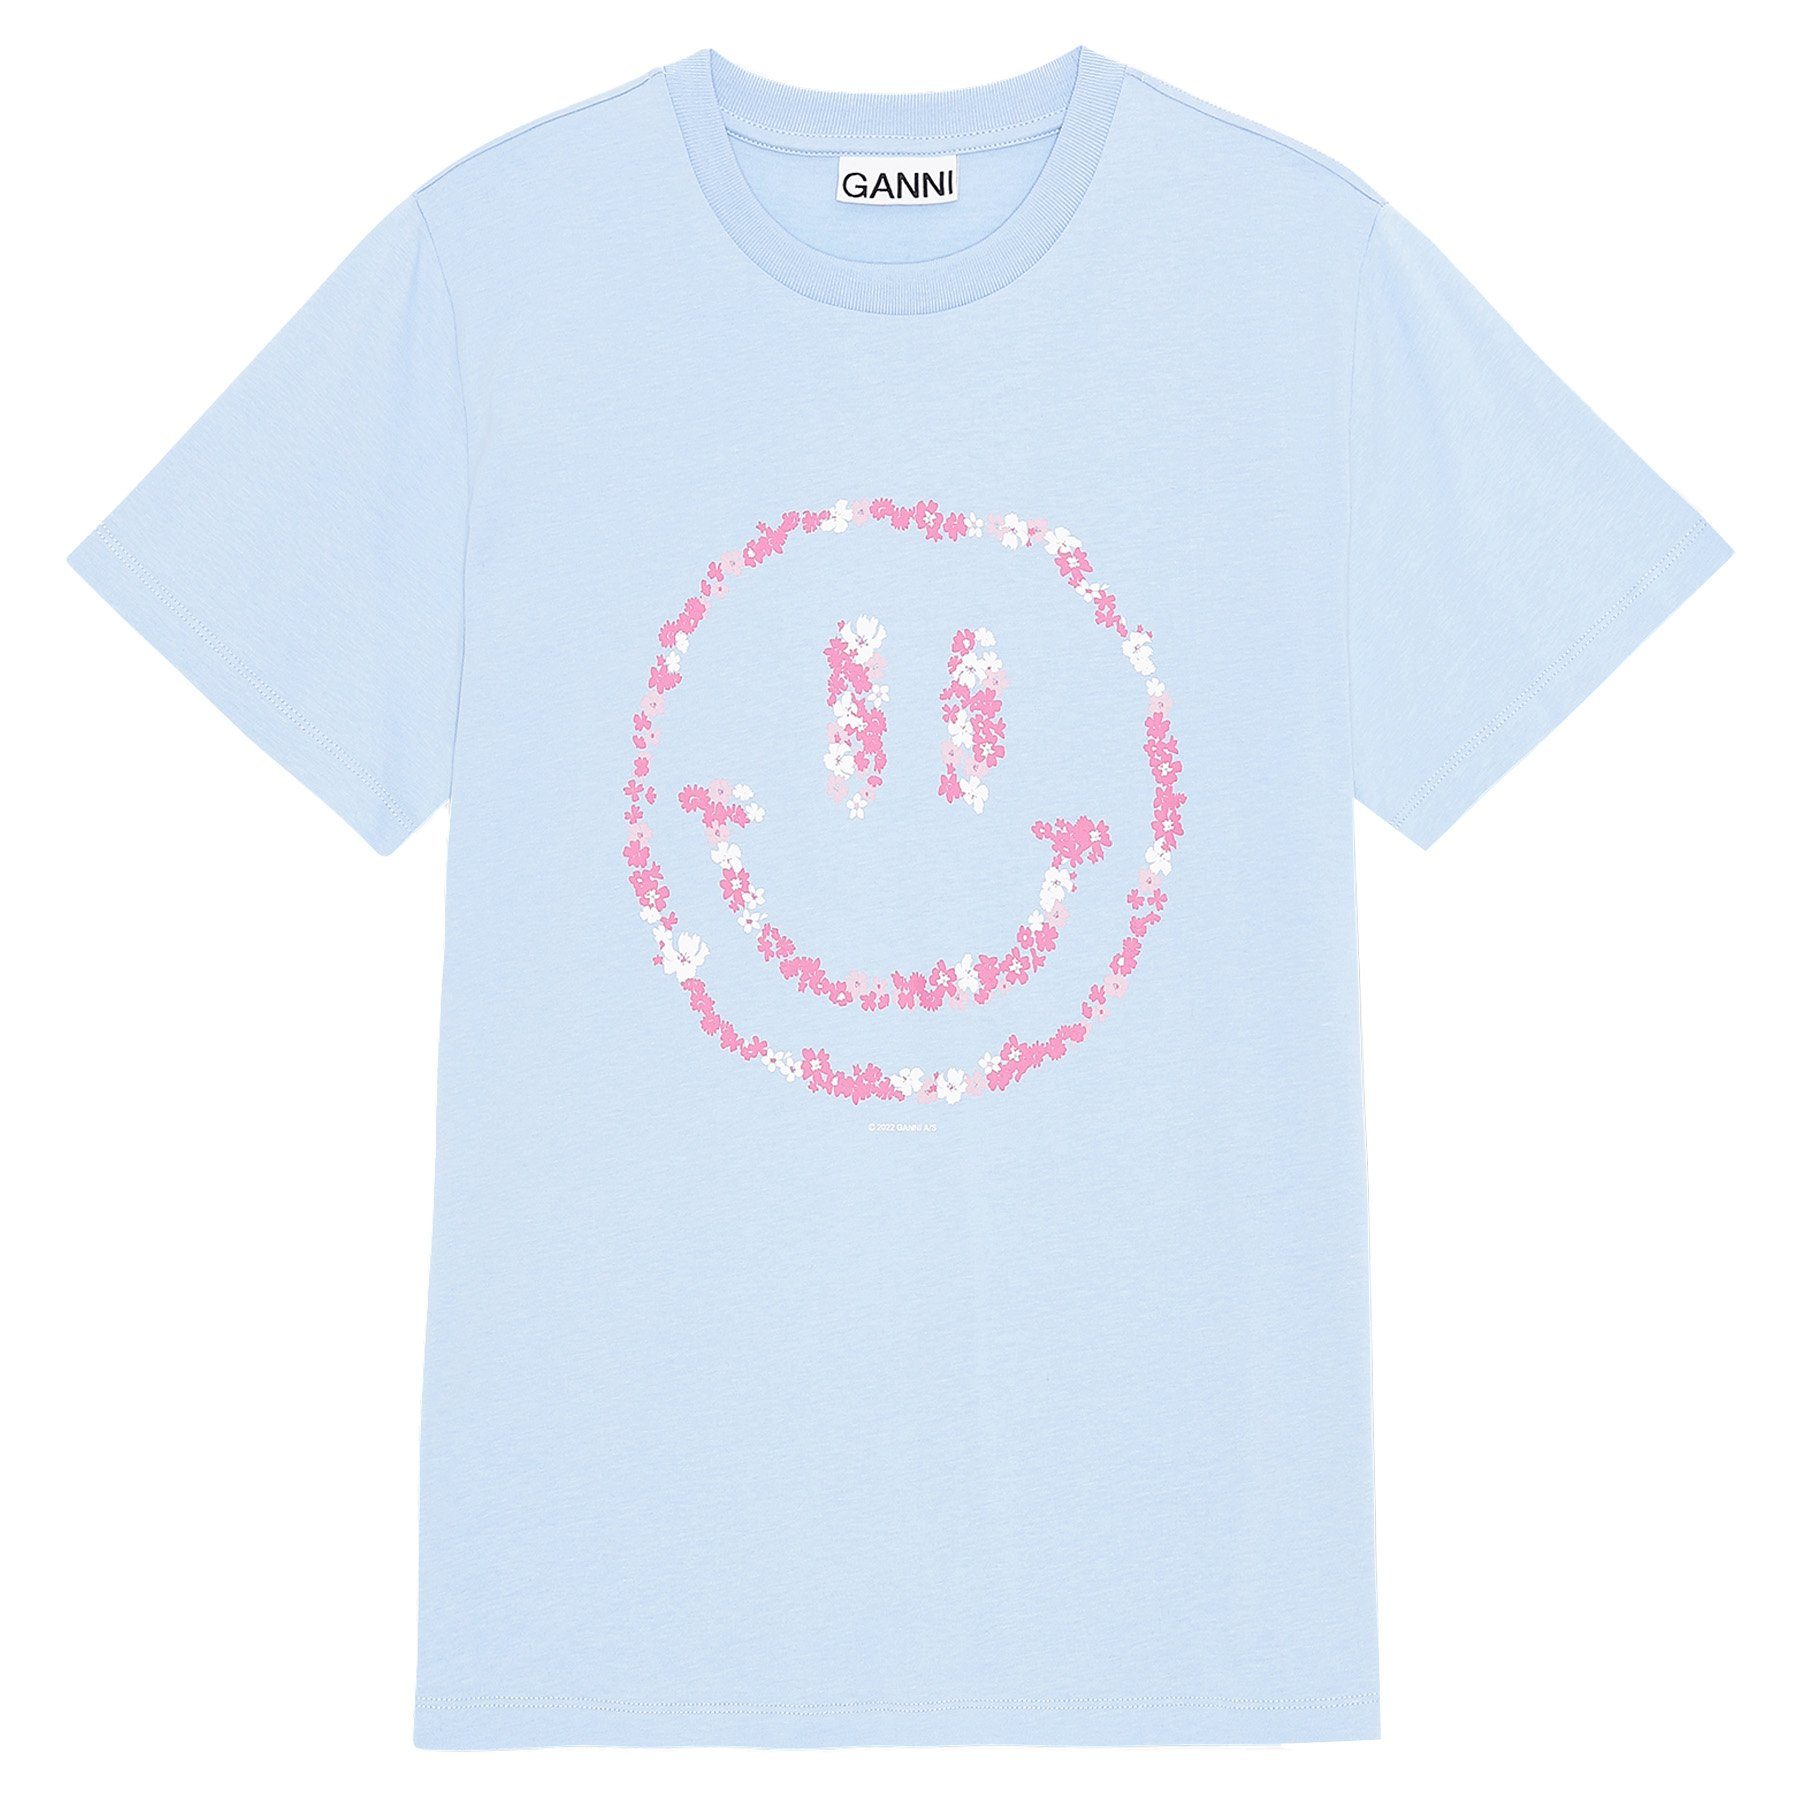 GANNI T-Shirt T-Shirt mit Smiley